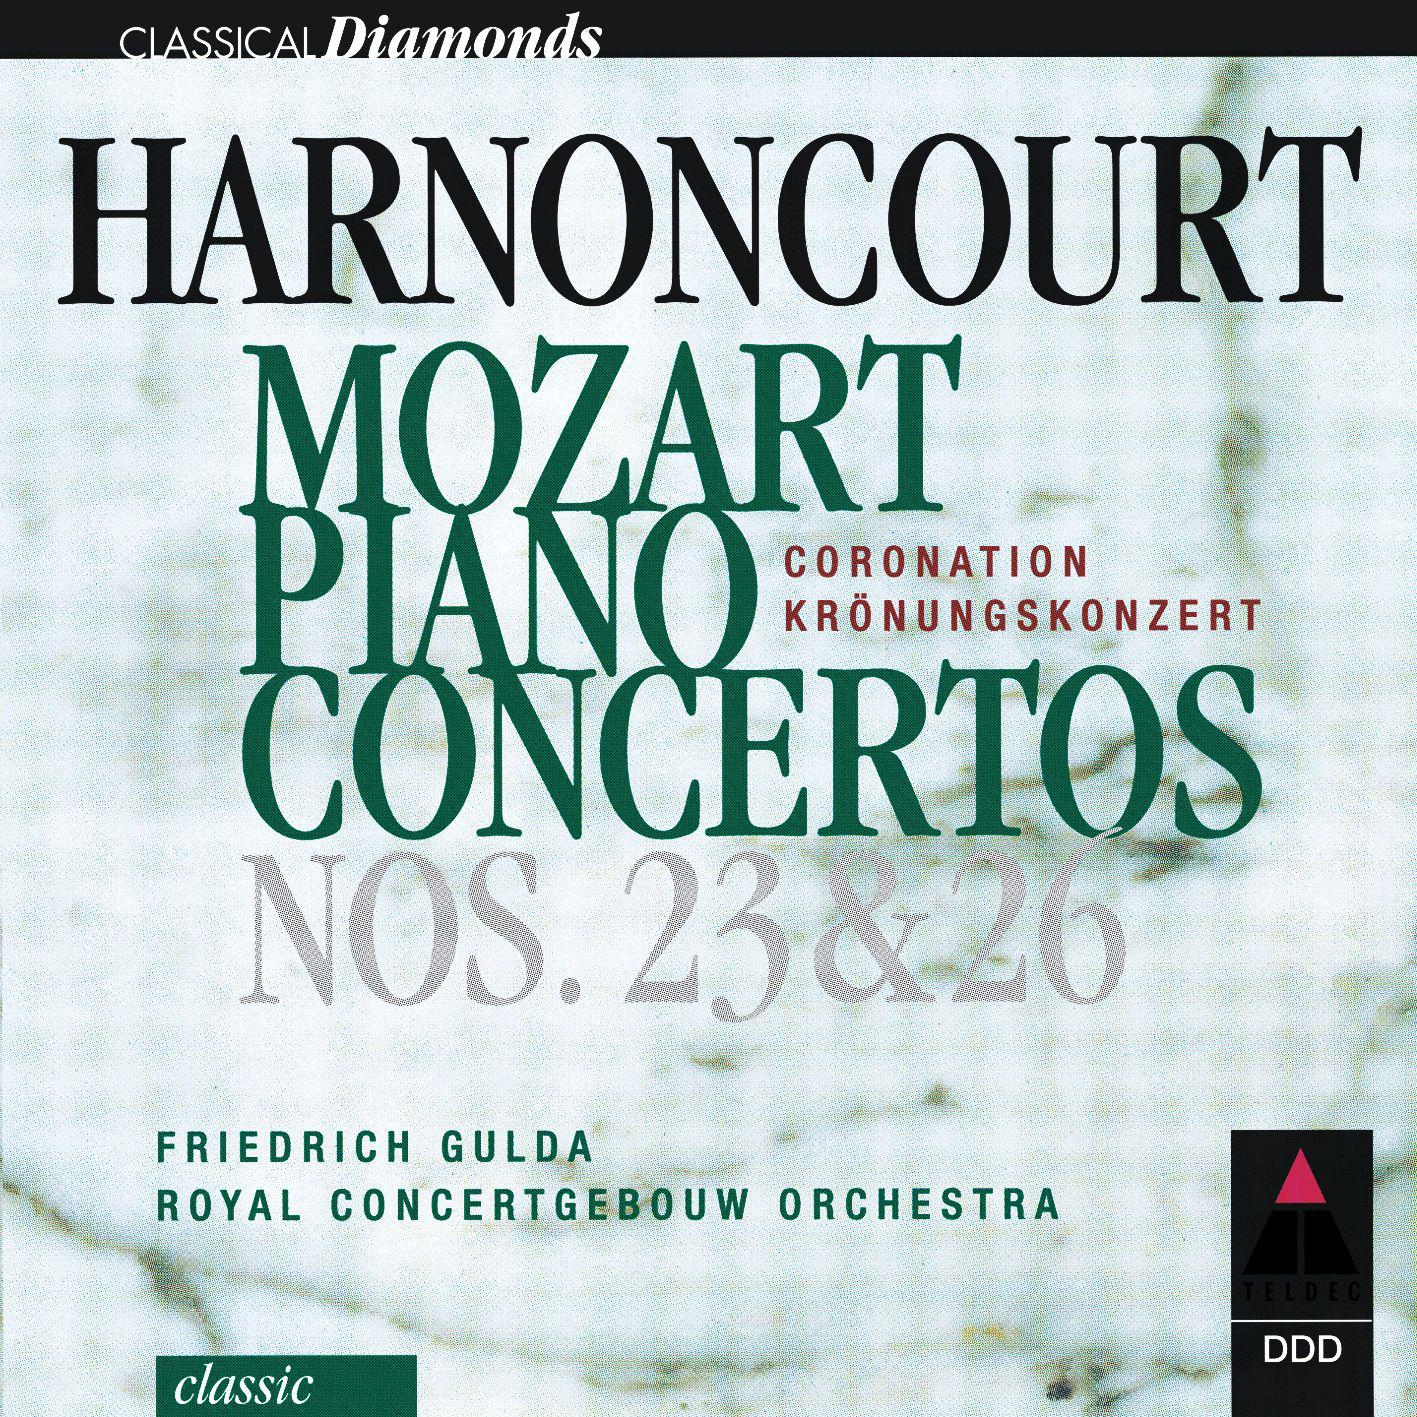 Piano Concerto No. 26 in D Major, K. 537 "Coronation":III. Allegretto